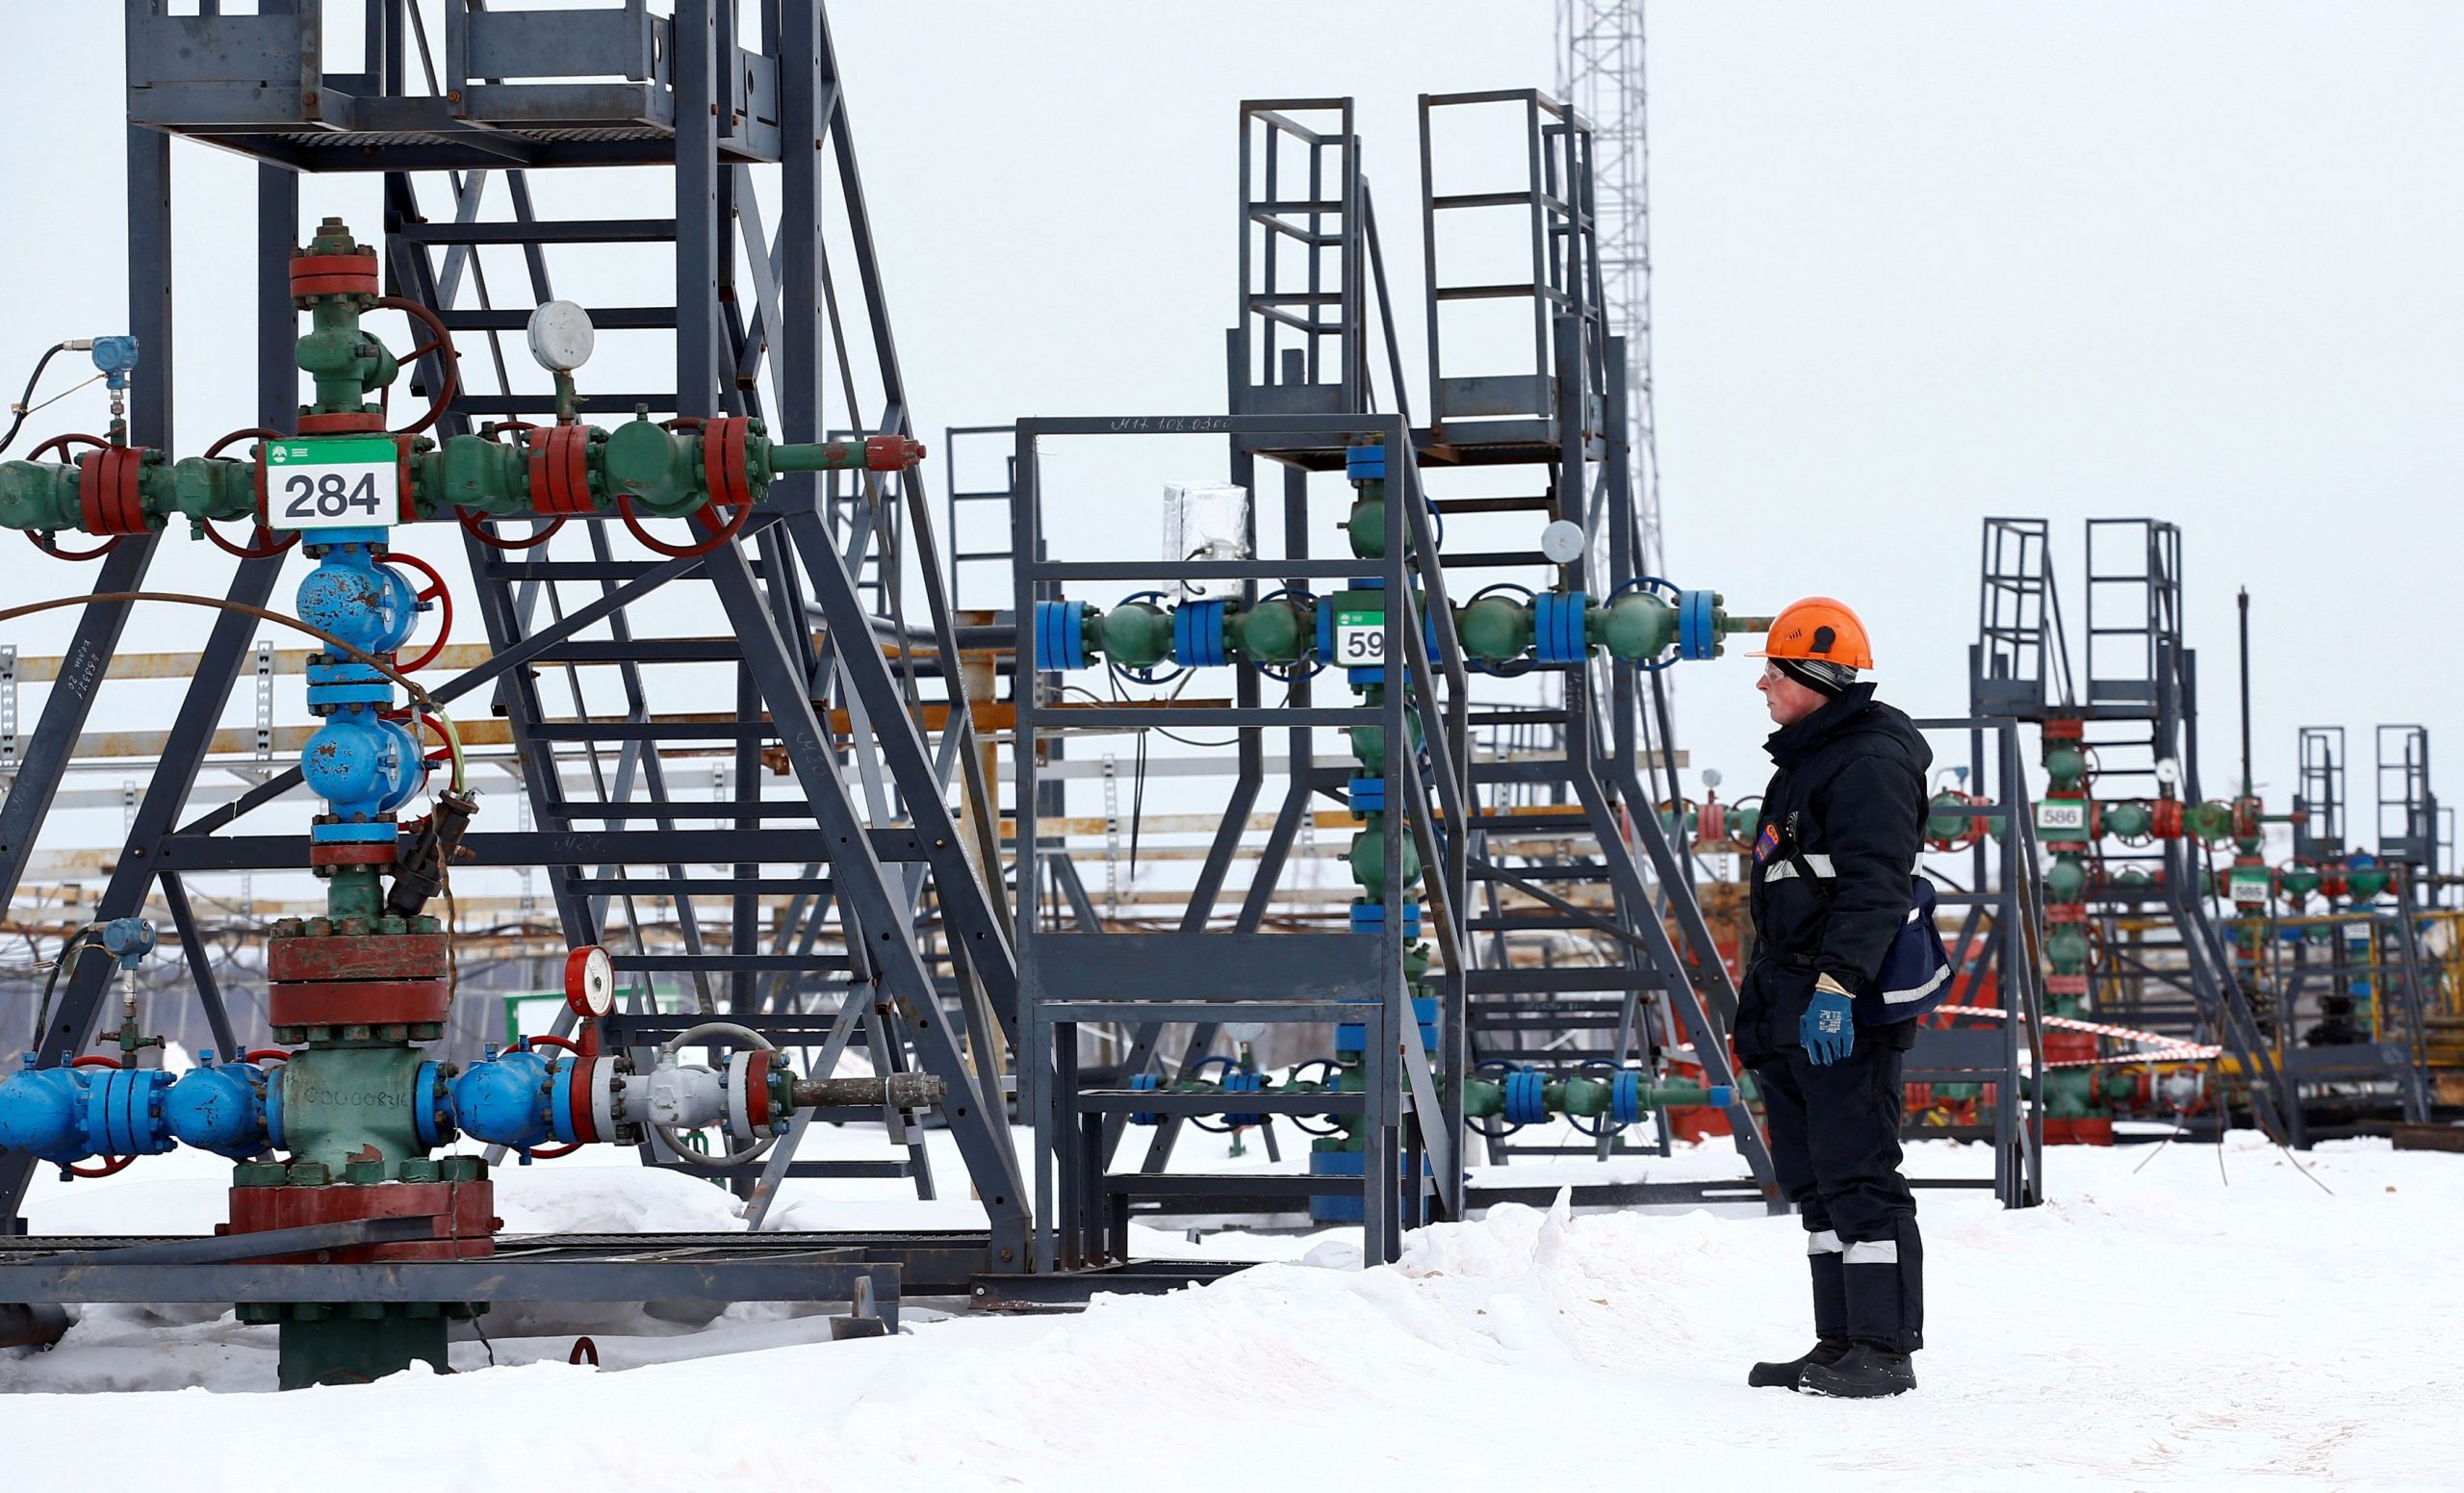 Ρωσία: Μειώνει περαιτέρω την παραγωγή πετρελαίου αλλά όχι τις εξαγωγές